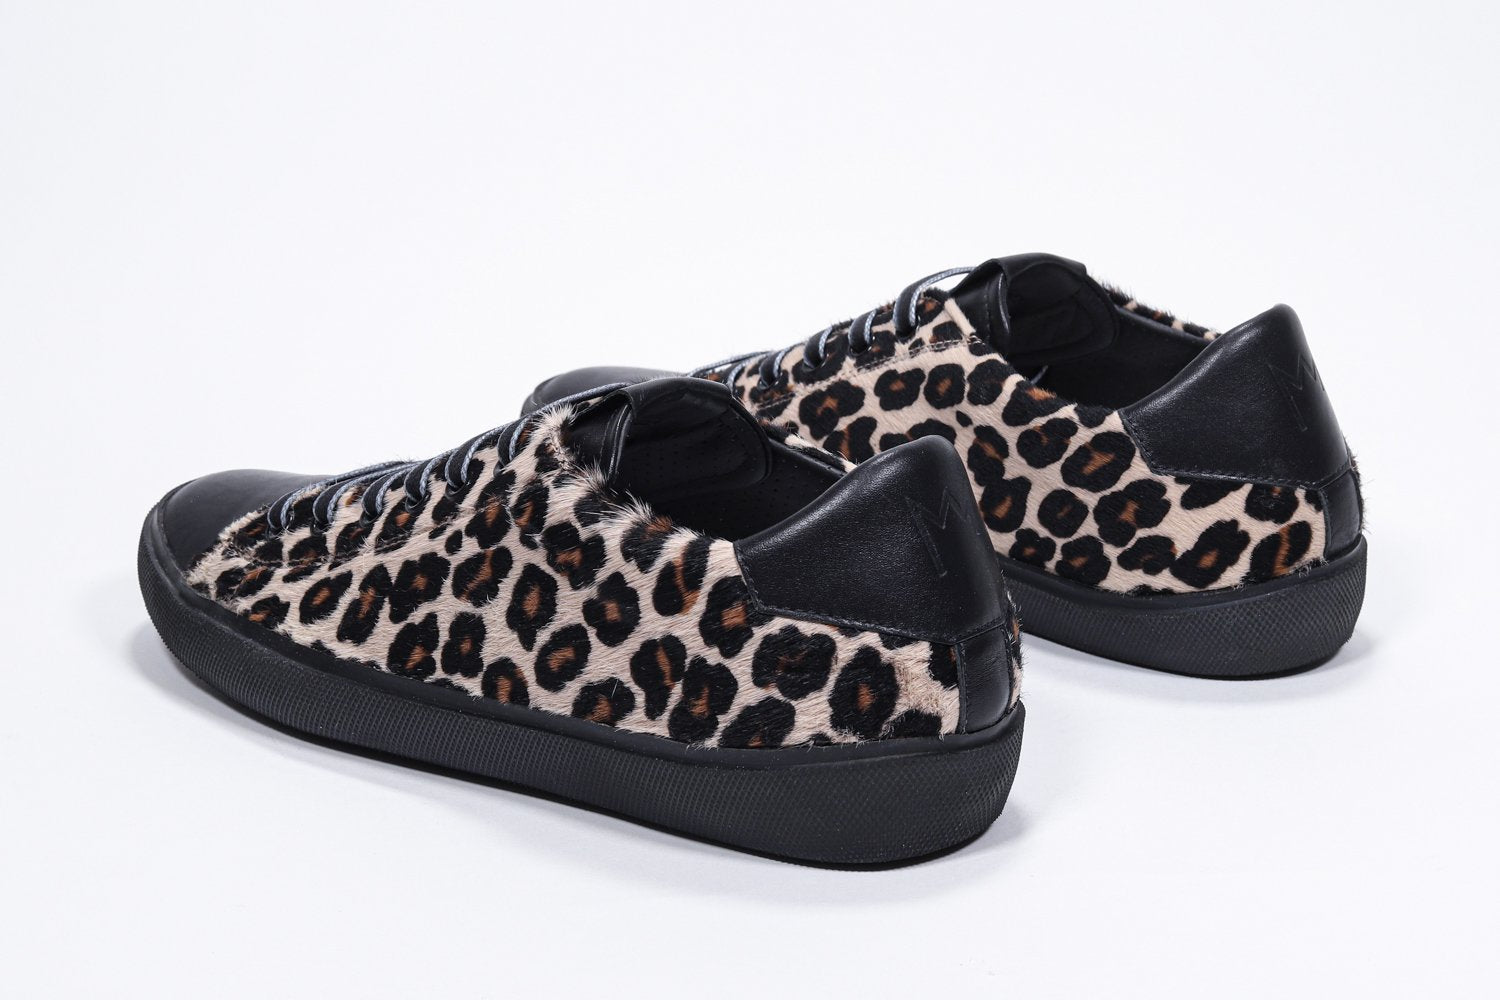 Vue de trois quarts arrière d'un modèle bas à imprimé léopard sneaker. Tige en cuir pleine fleur et semelle en caoutchouc noir.